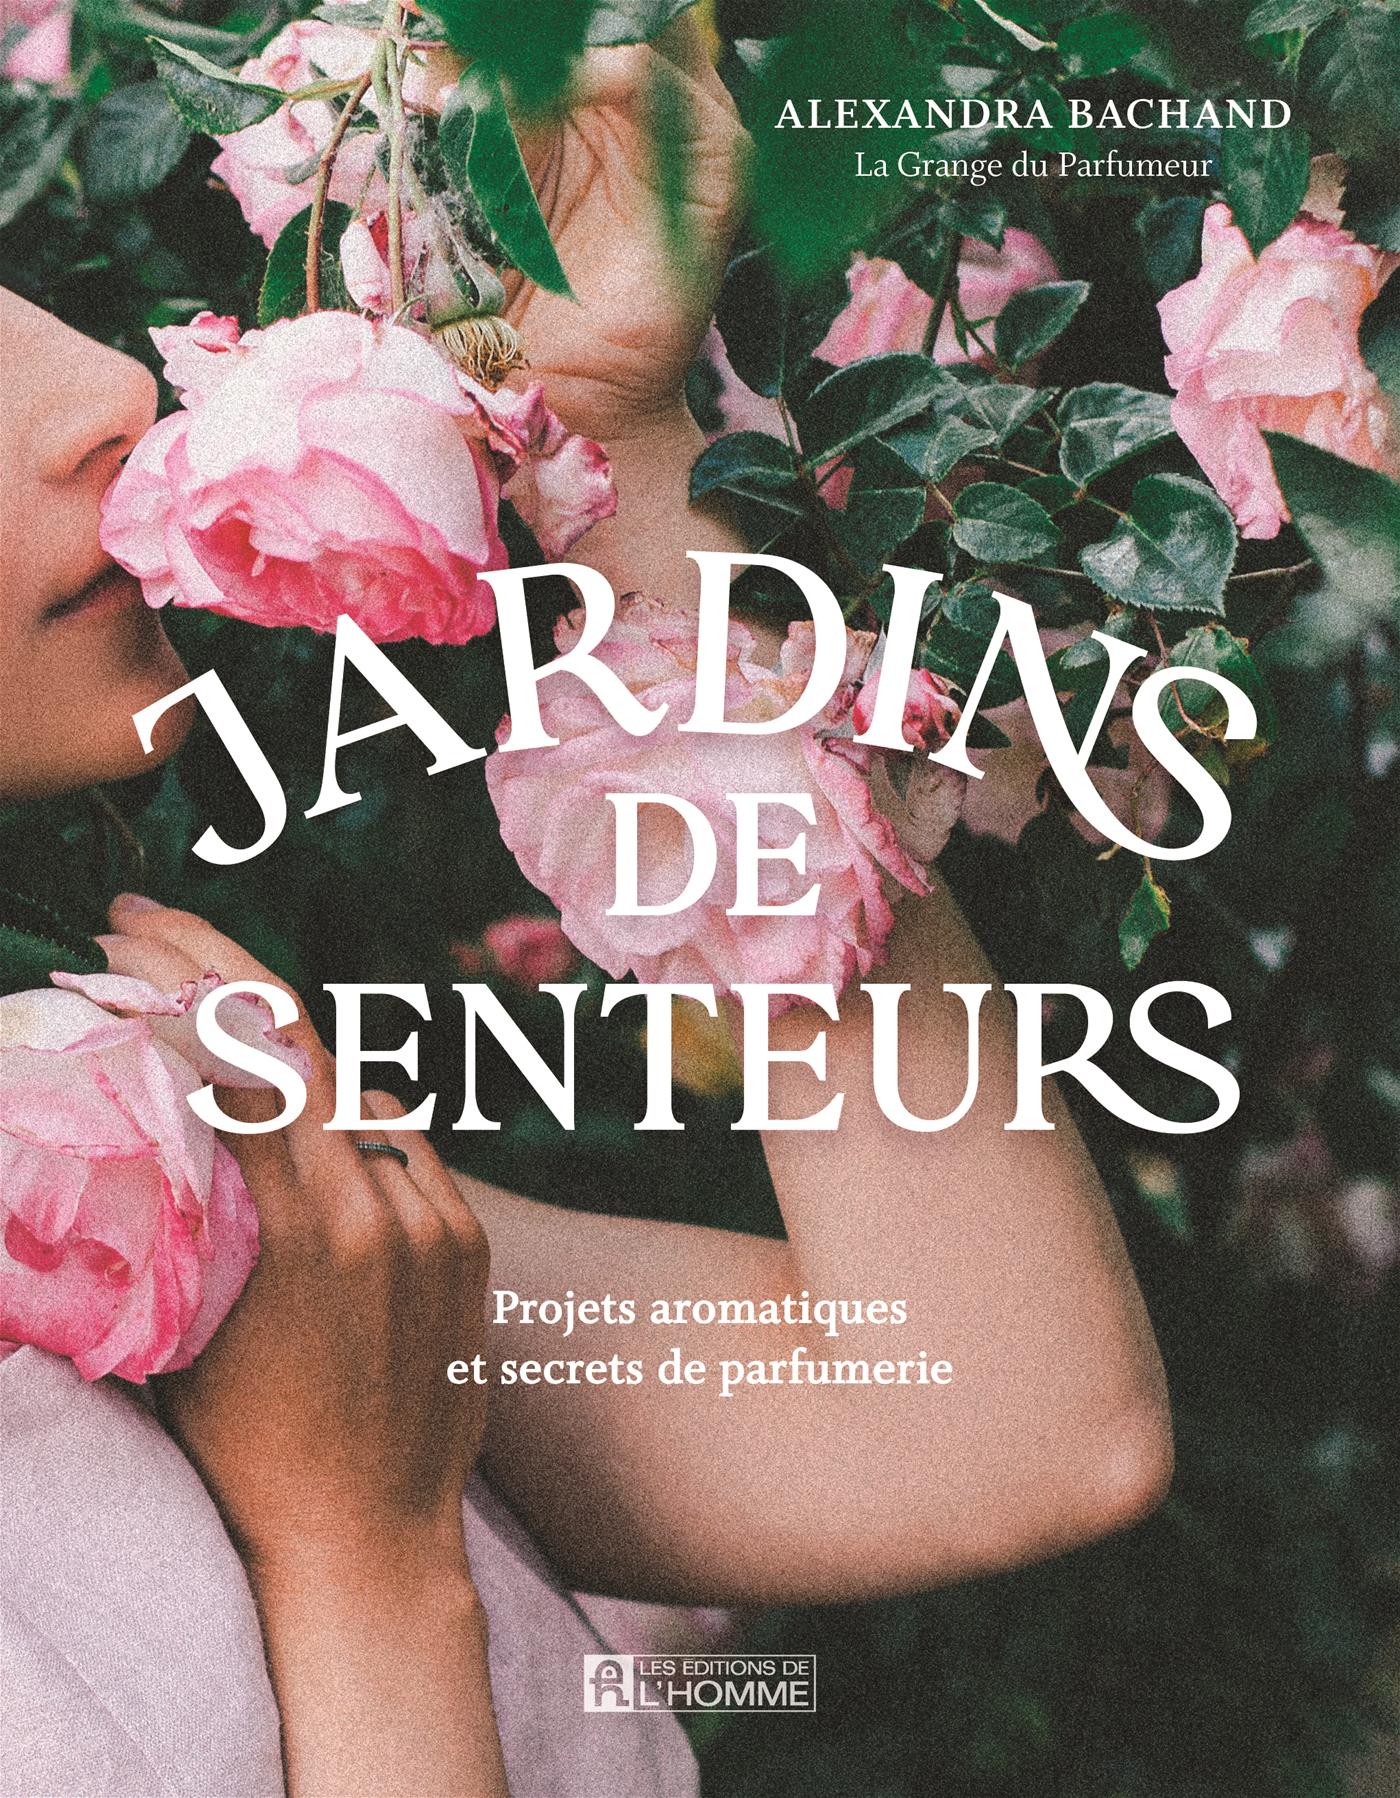 Jardins de senteurs - Projets aromatiques et secrets de parfumerie